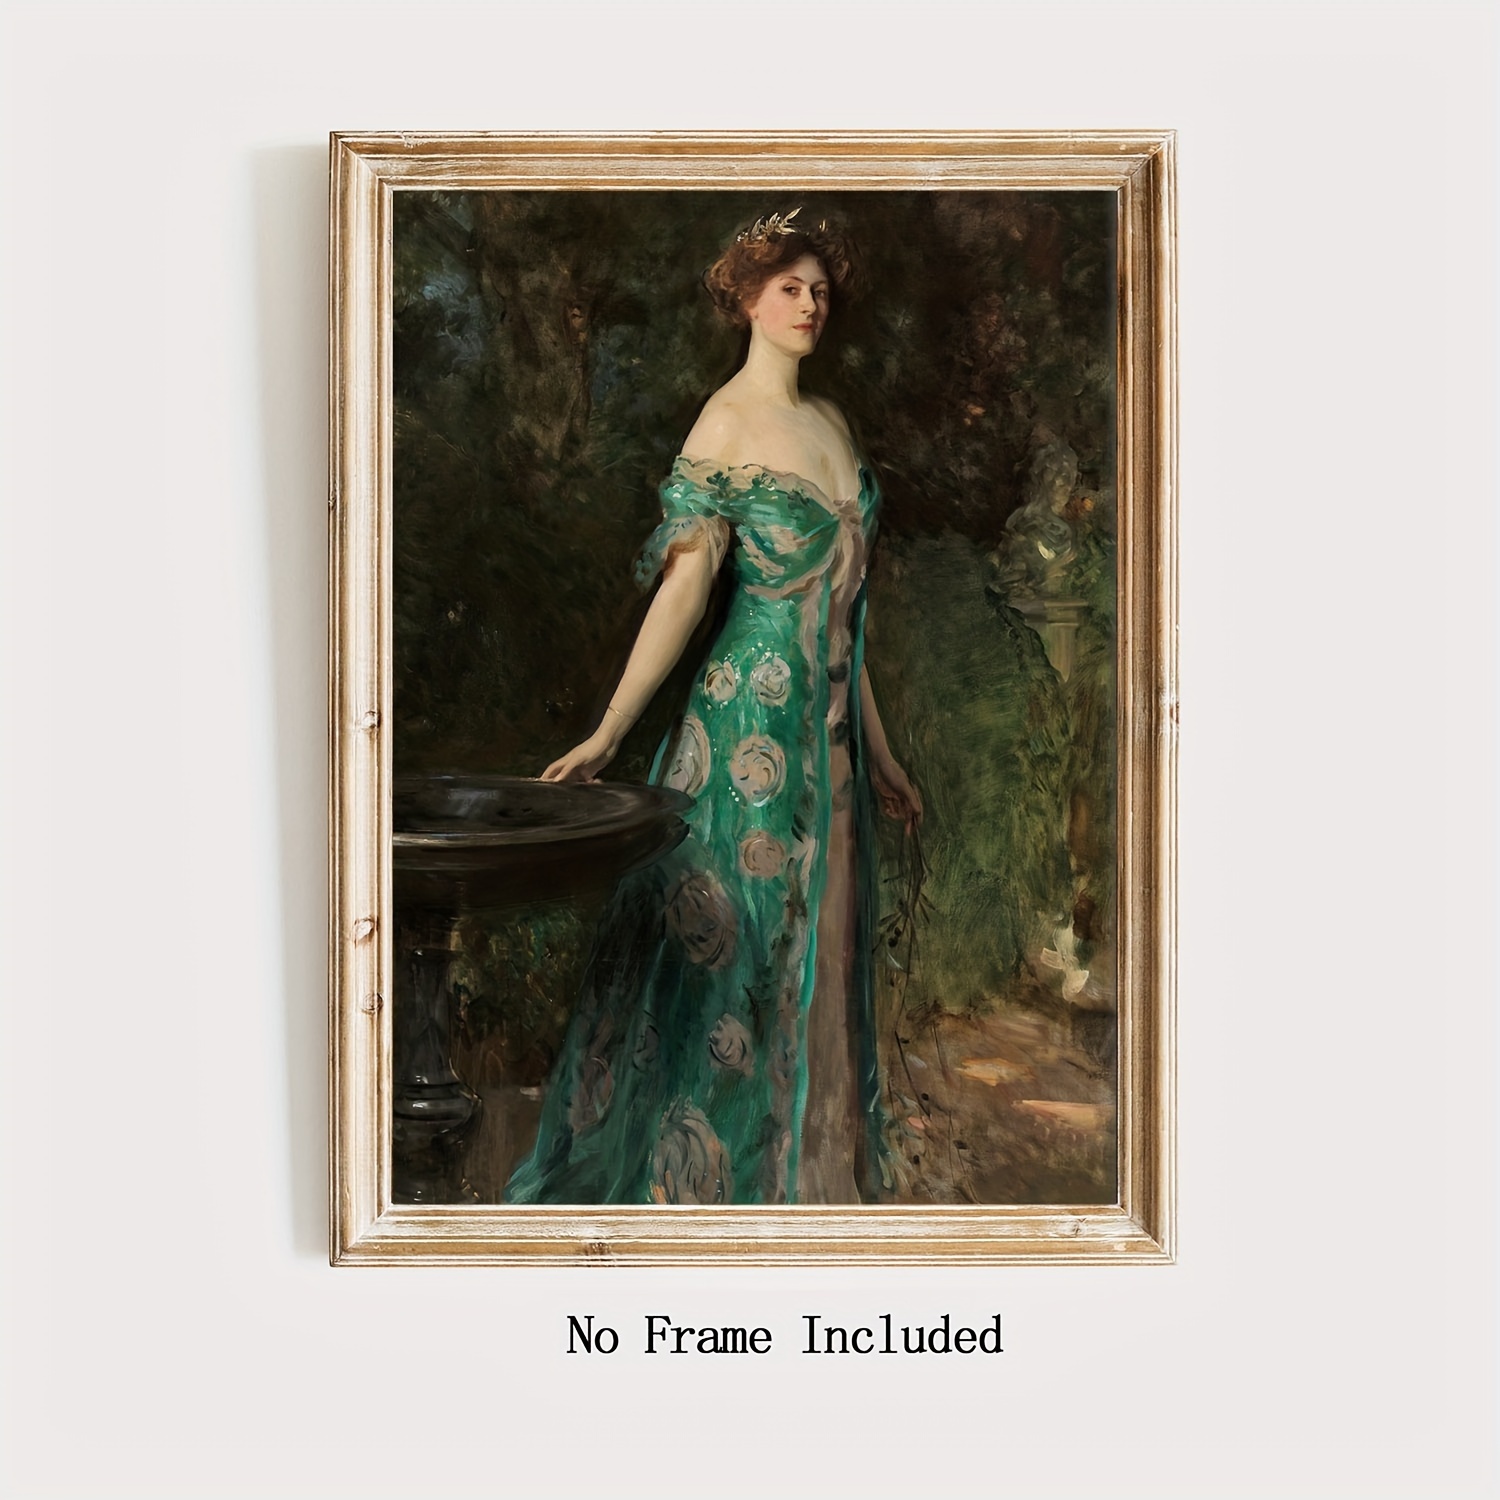 NEW得価19世紀 アンティーク ウーマン 女性 ポートレート 肖像画 油絵 額縁 インテリア アート ディスプレイ 店舗什器 人物画